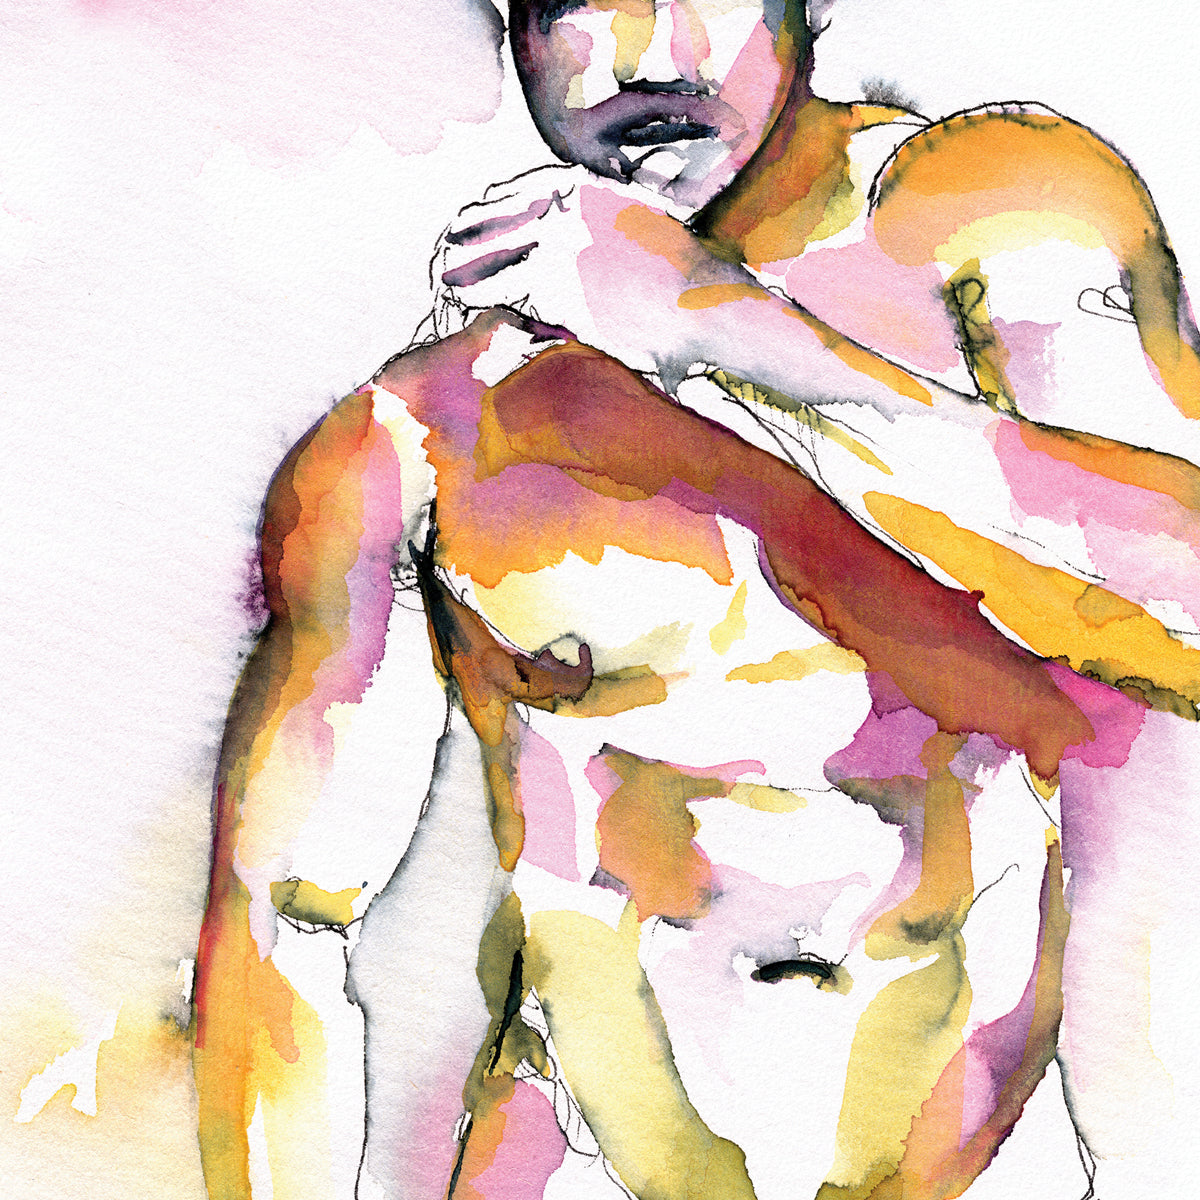 Hirsute Muscular Young Man - Original Watercolor Painting